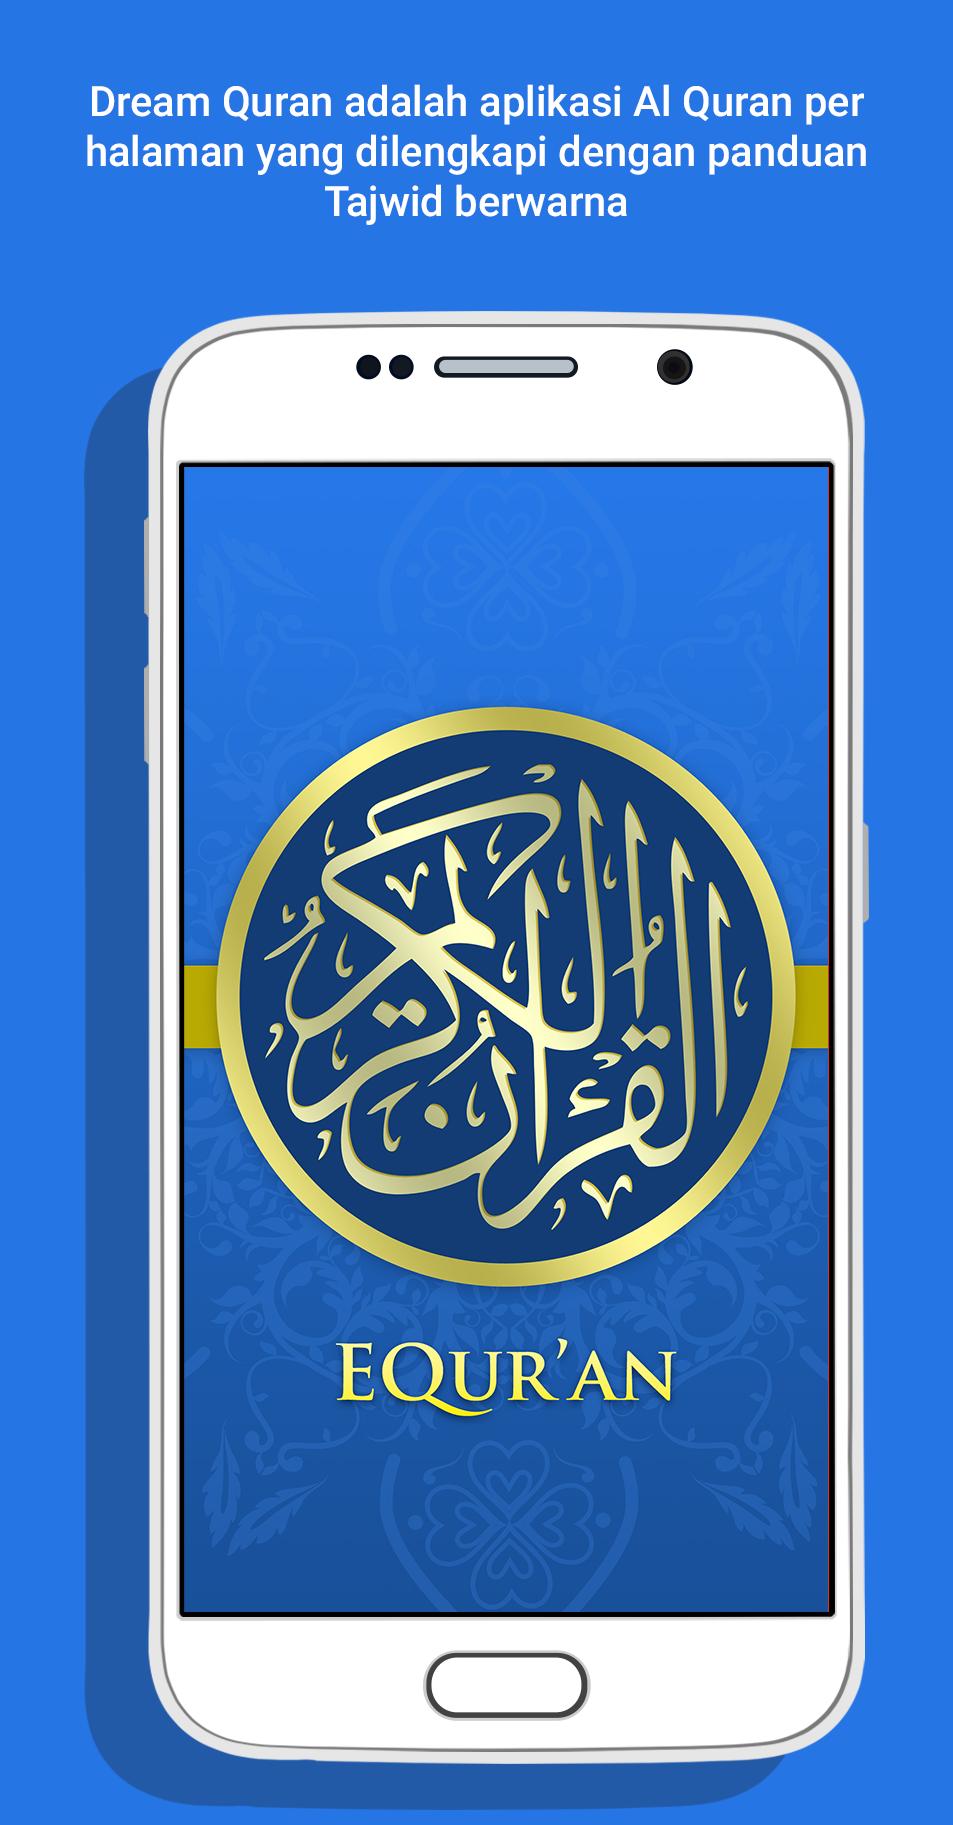 Al Quran Tajwid - Dream Quran 3.1.2 Screenshot 1